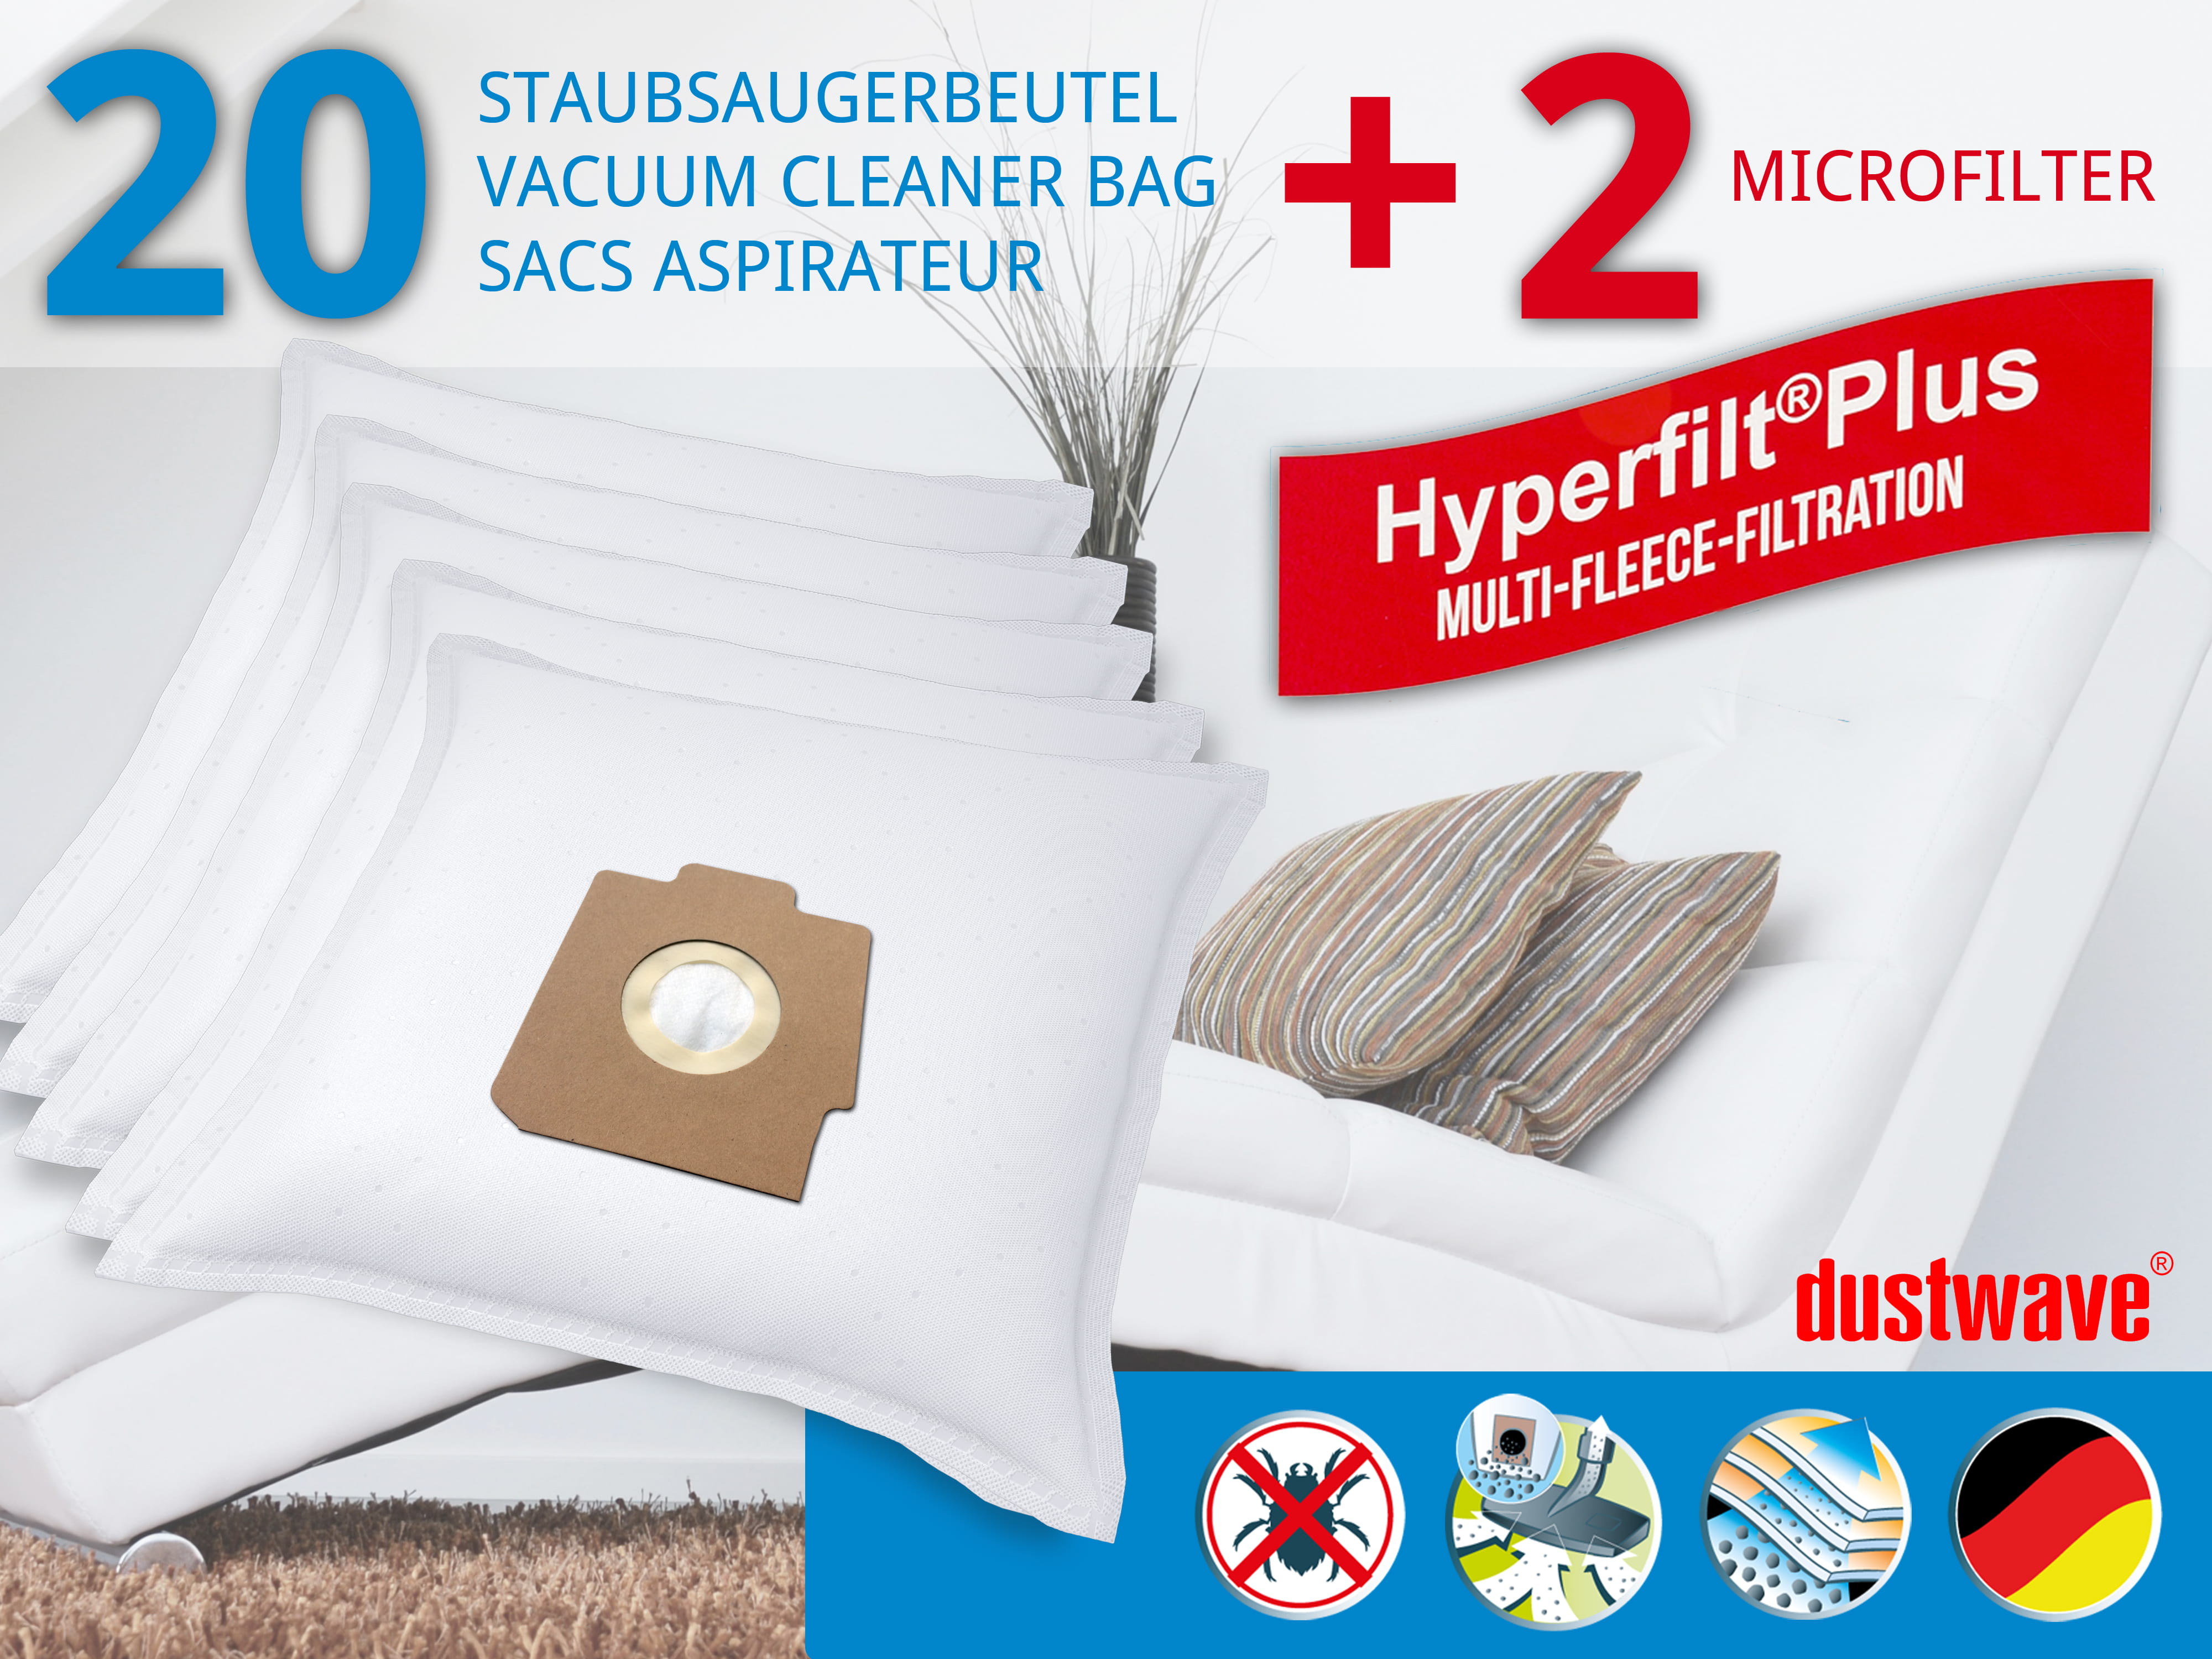 Dustwave® 20 Staubsaugerbeutel für Hoover SC219... / TRSC219 - hocheffizient, mehrlagiges Mikrovlies mit Hygieneverschluss - Made in Germany